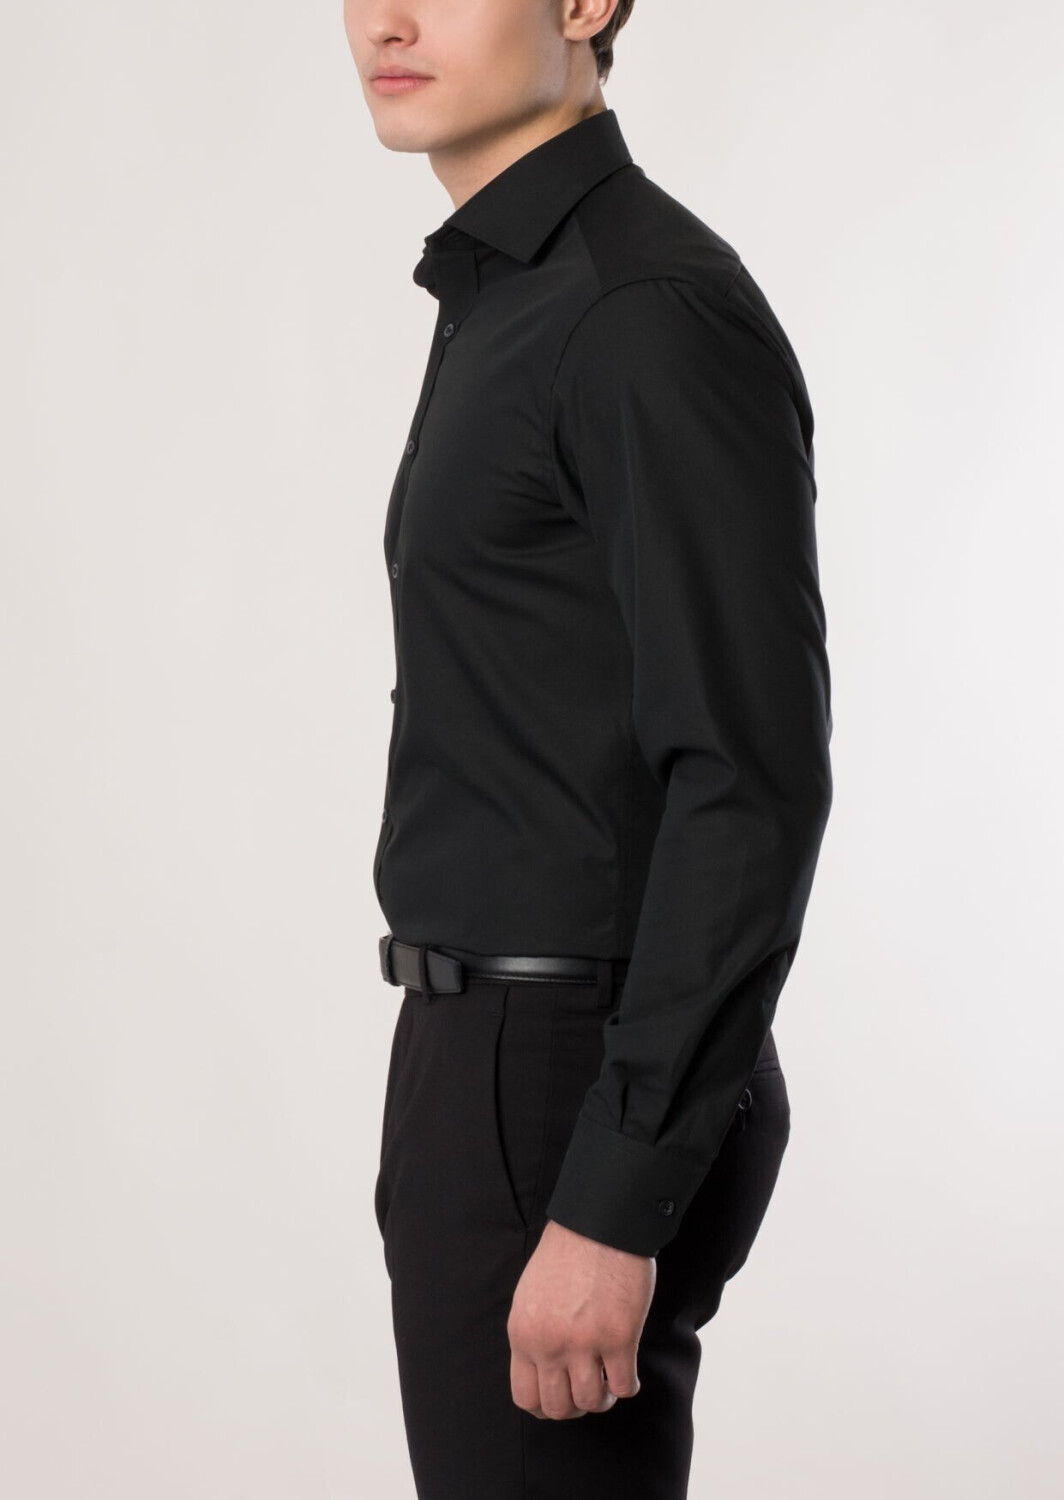 Eterna Modern Fit Hemd extra langer Arm schwarz (1100-39-X177) ab 44,99 € |  Preisvergleich bei